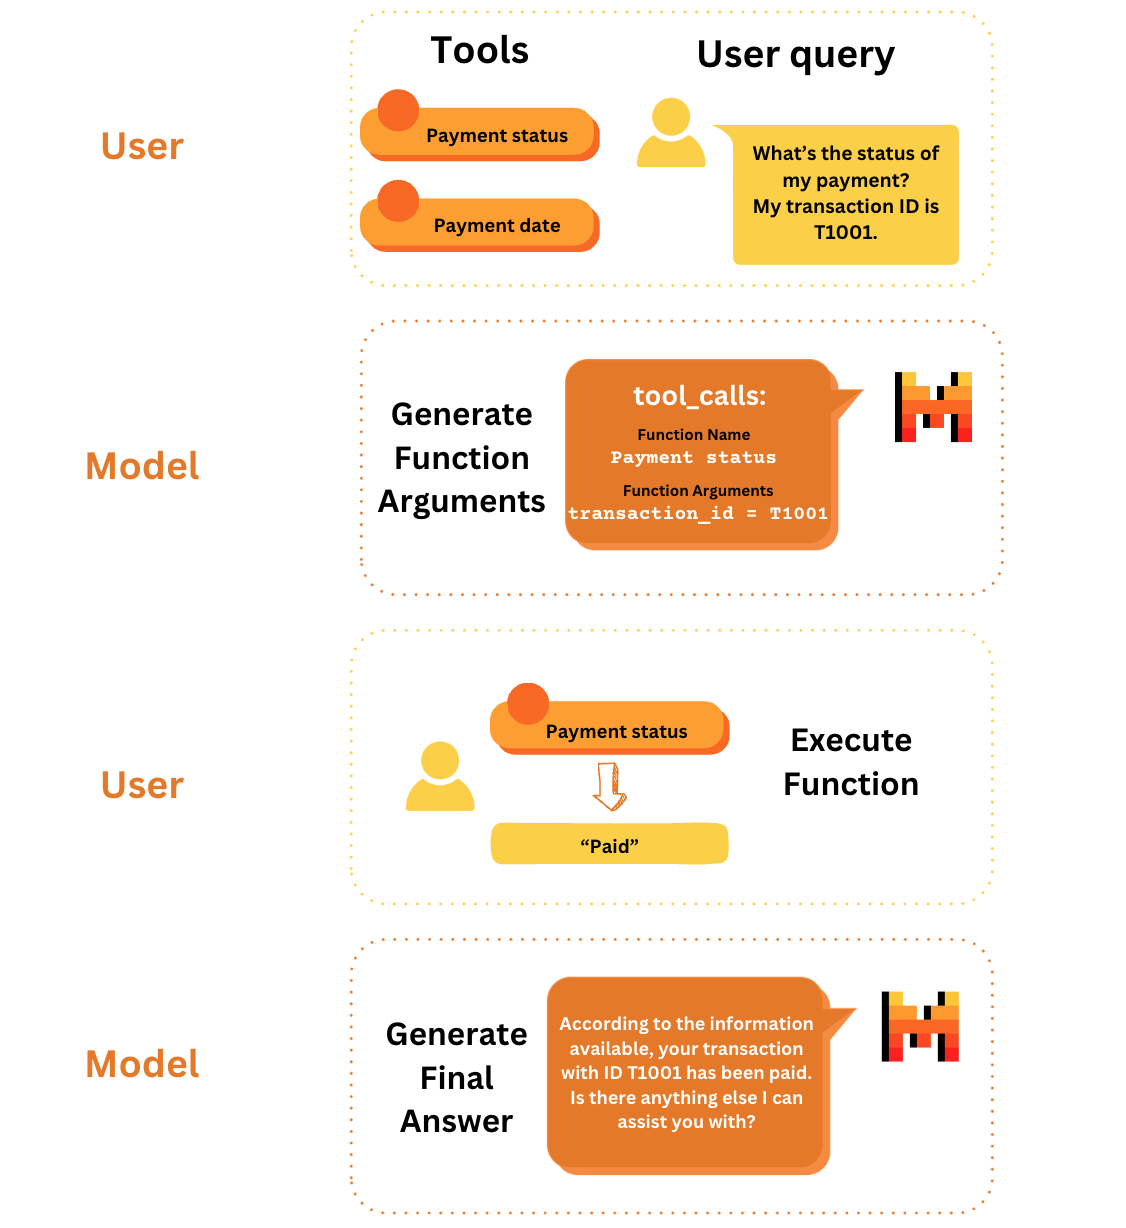 Auf einen Blick gibt es vier Schritte mit Funktionsaufrufen: Benutzer: Werkzeuge und Abfrage festlegen Modell:Funktionsargumente generieren, falls zutreffend Nutzer: Funktion ausführen, um Ergebnisse der Werkzeuge zu erhalten Modell: Endgültige Antwort generieren